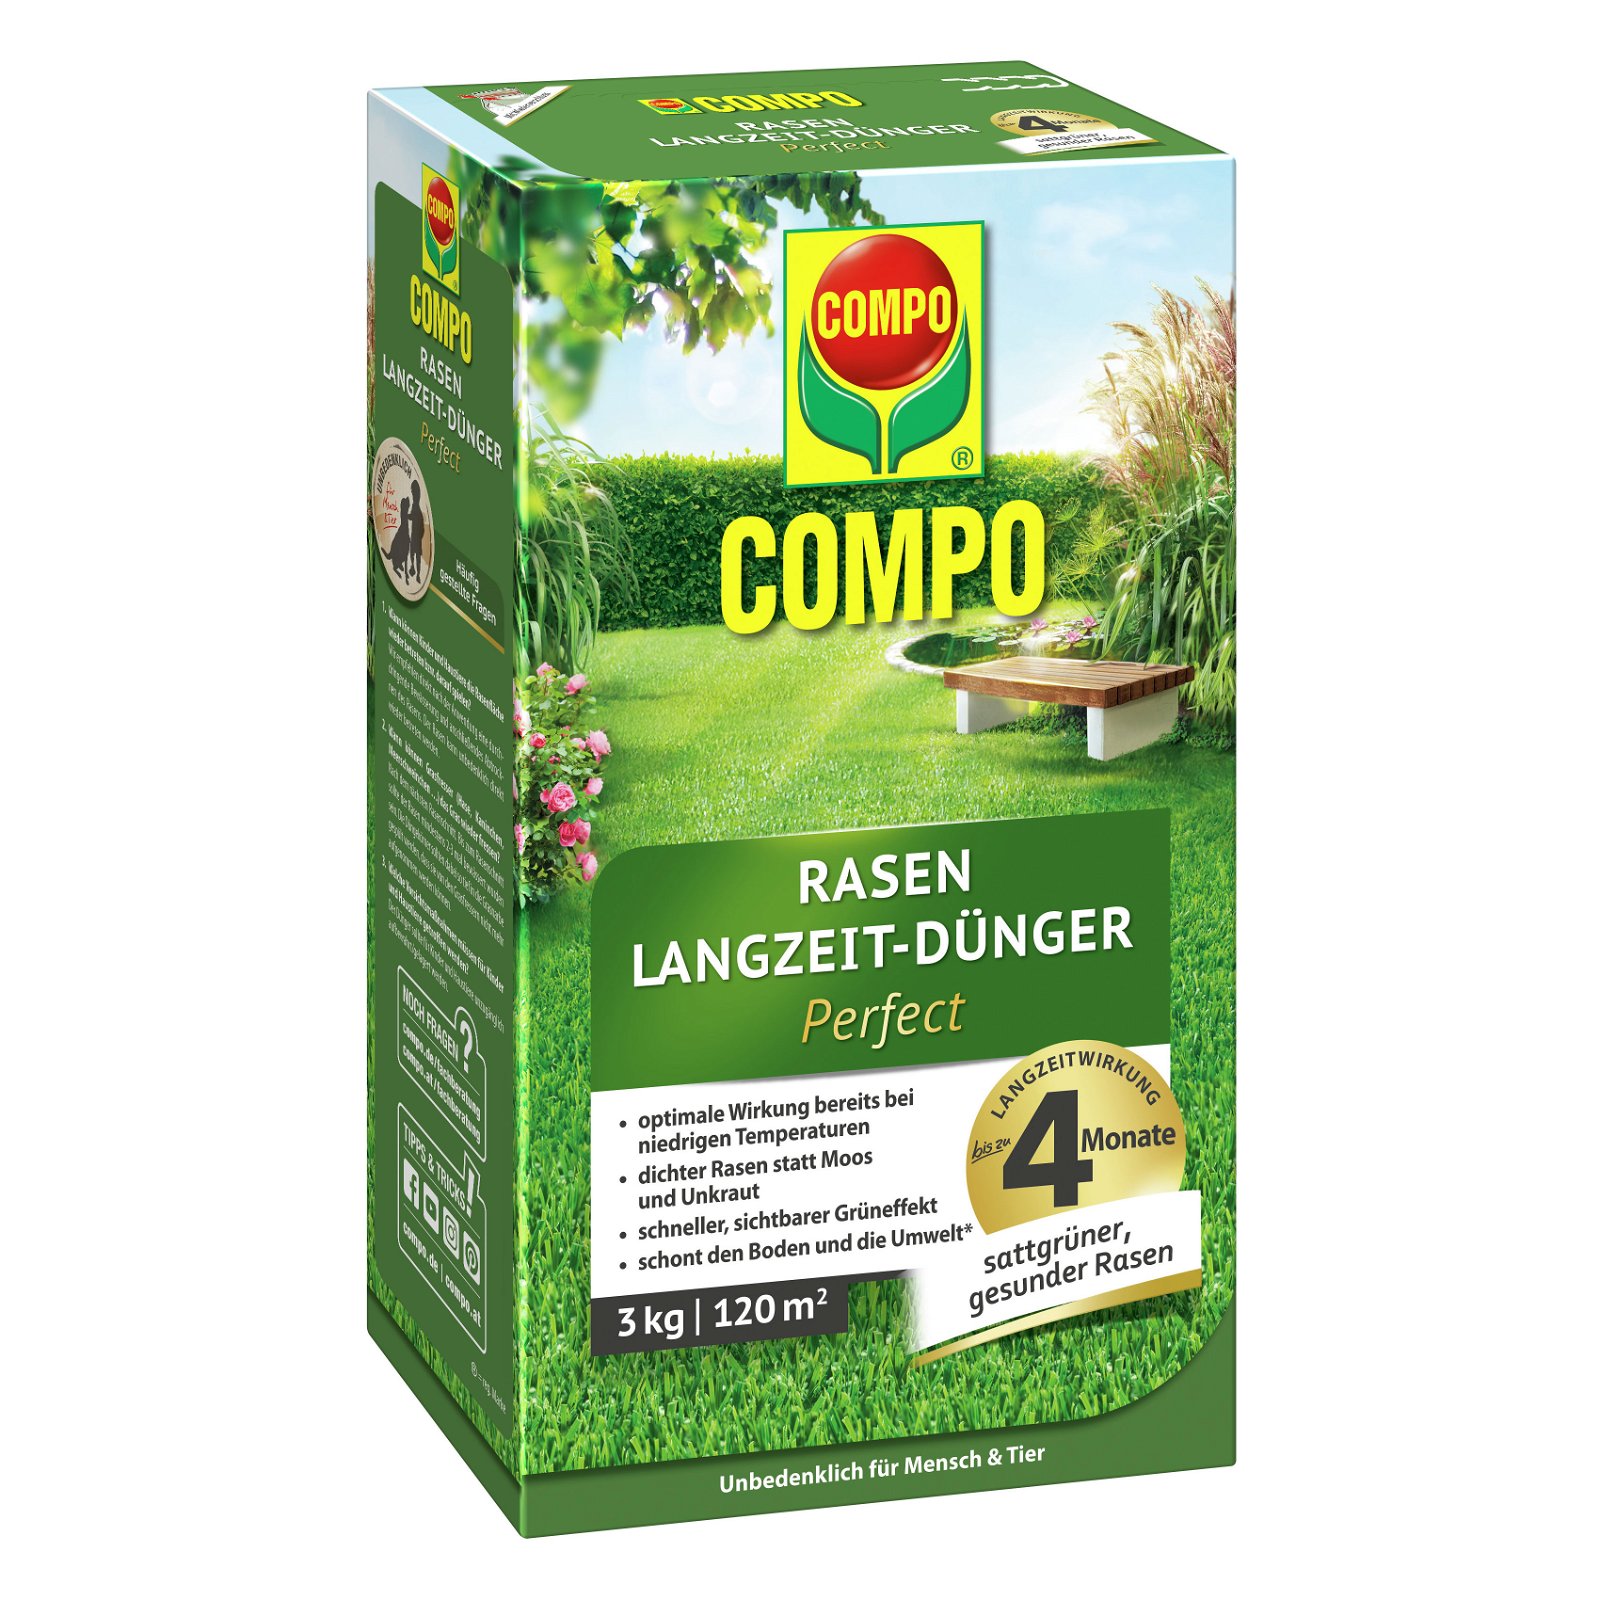 Compo Rasen Langzeitdünger Perfect, 3 kg für 120qm